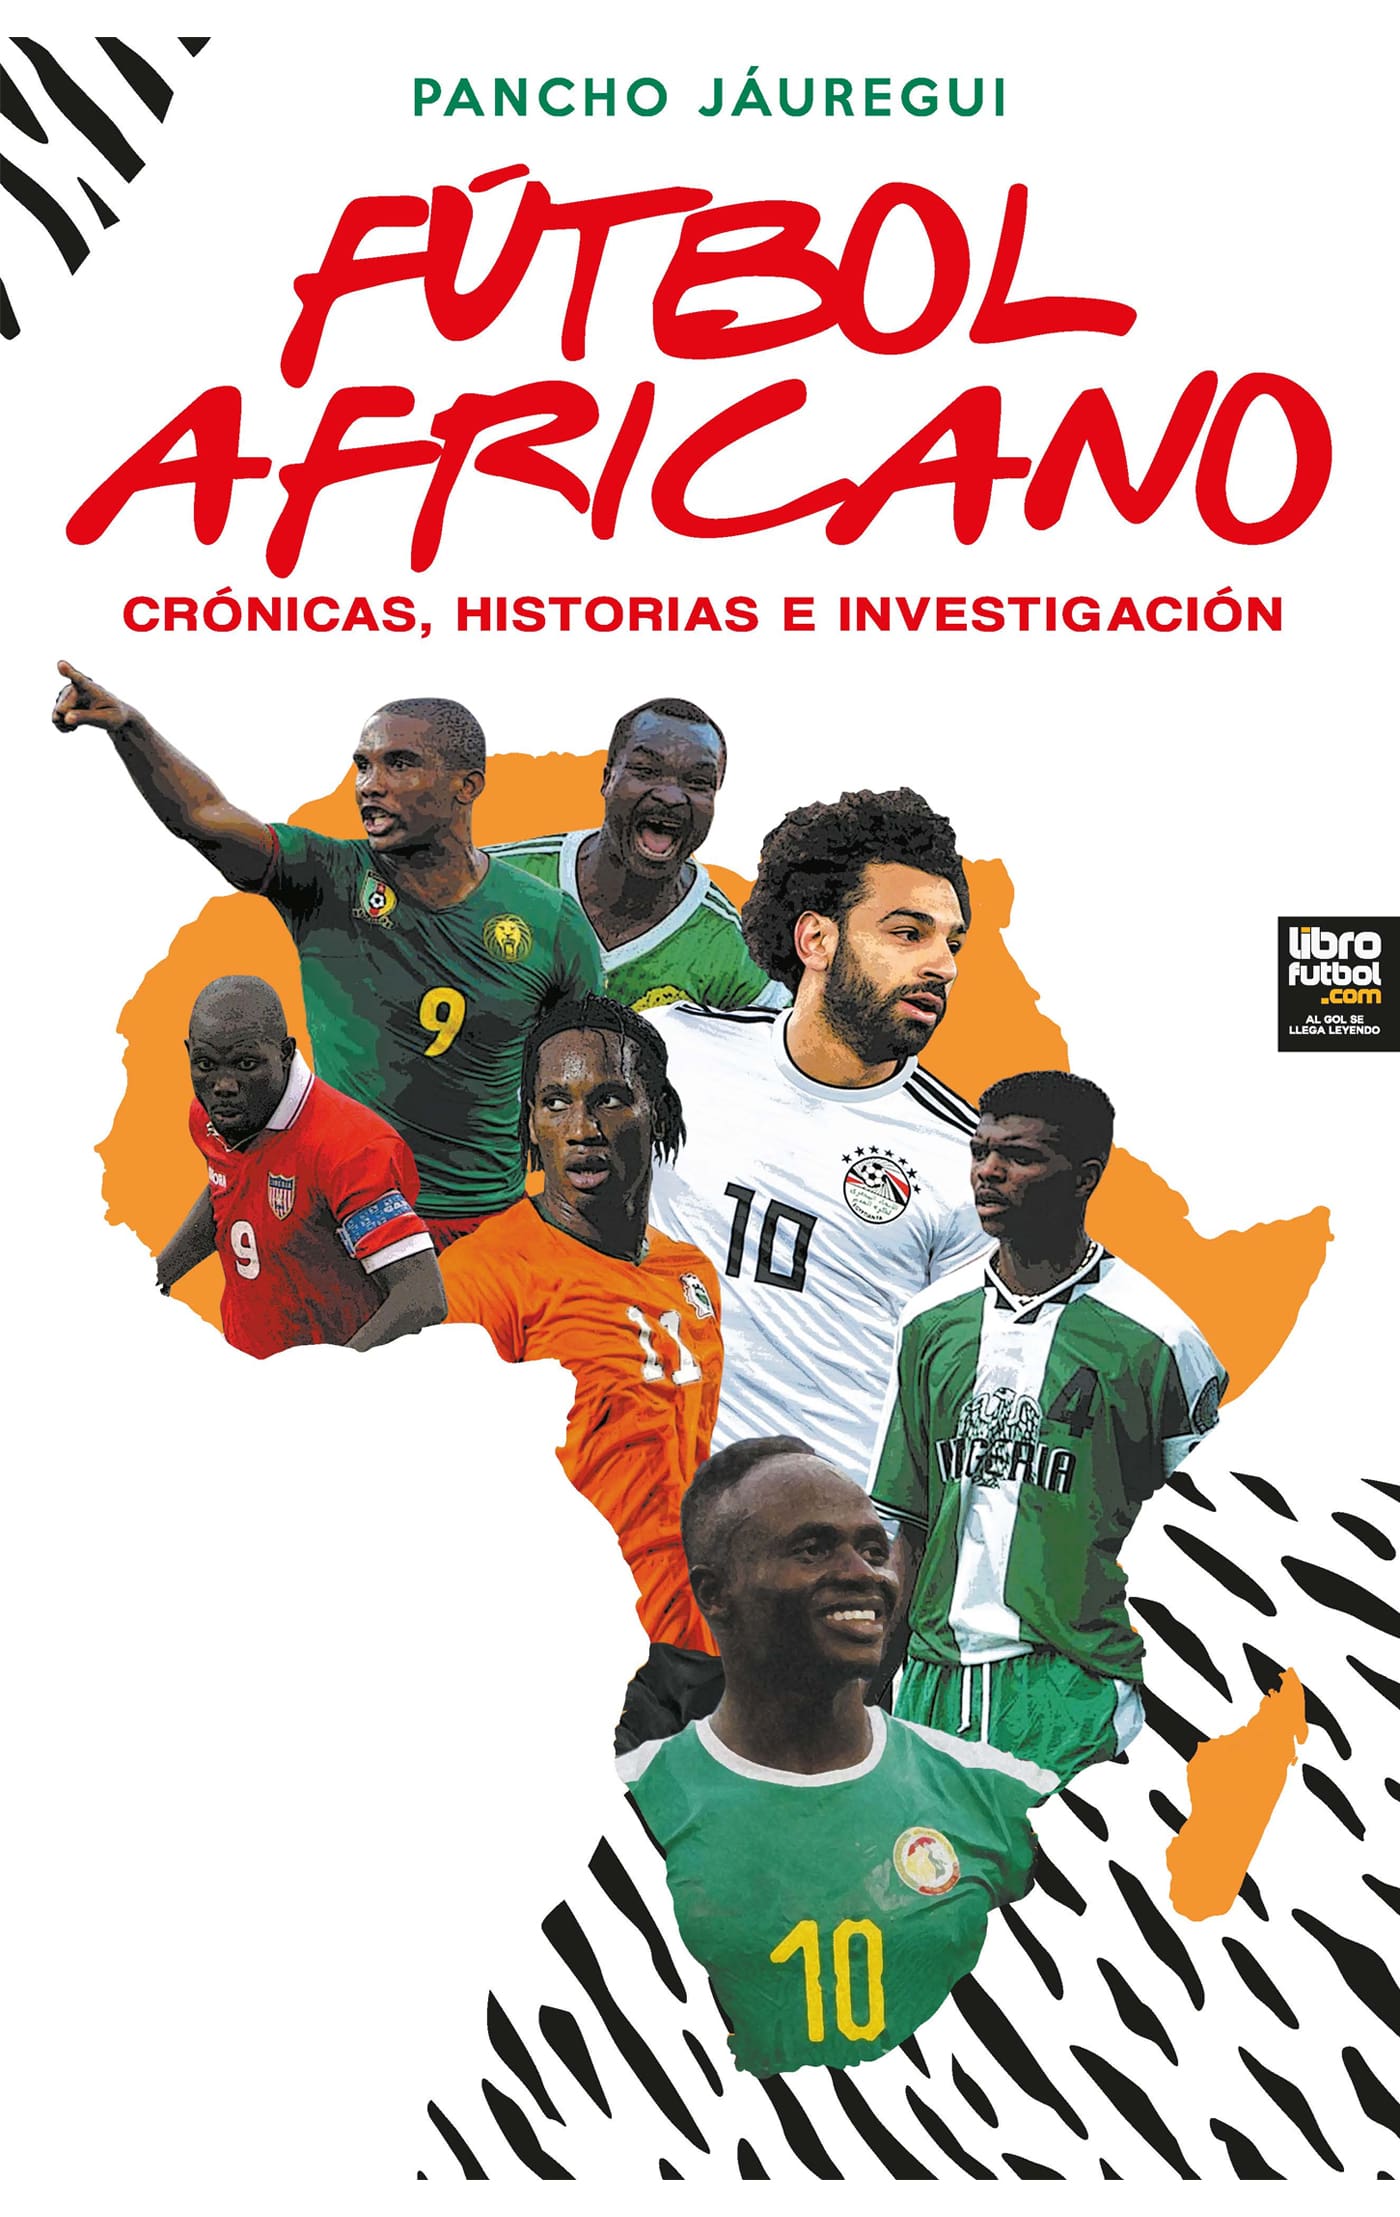 FÚTBOL AFRICANO - Librería deportiva - Libros deportivos